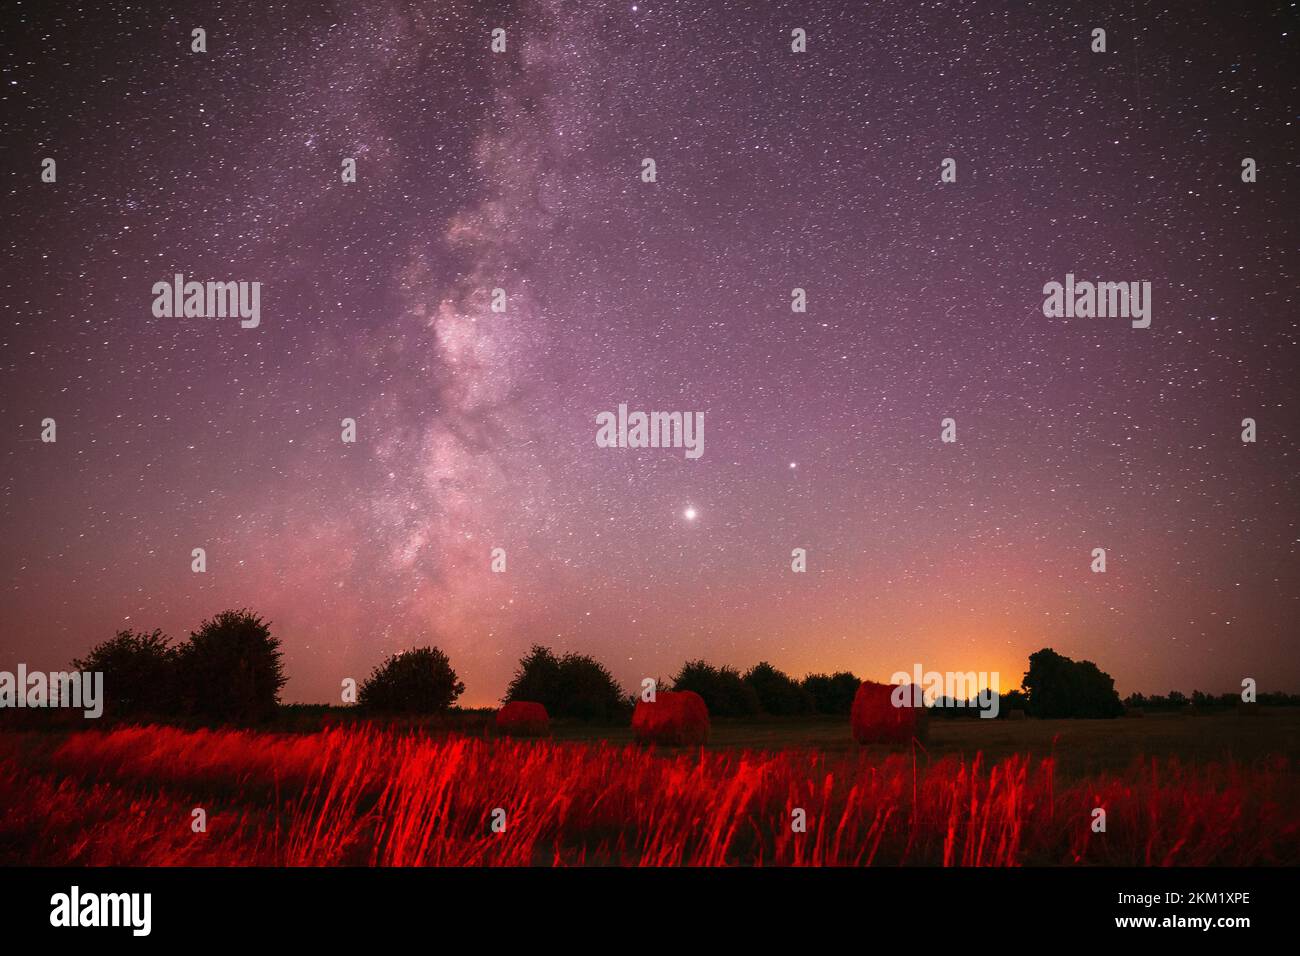 Agrícola Colorful Background Copy Space. Estrellas del cielo natural de la noche real con la vía lechosa sobre el prado del campo con los rodillos de paja en los campos después de la cosecha Foto de stock